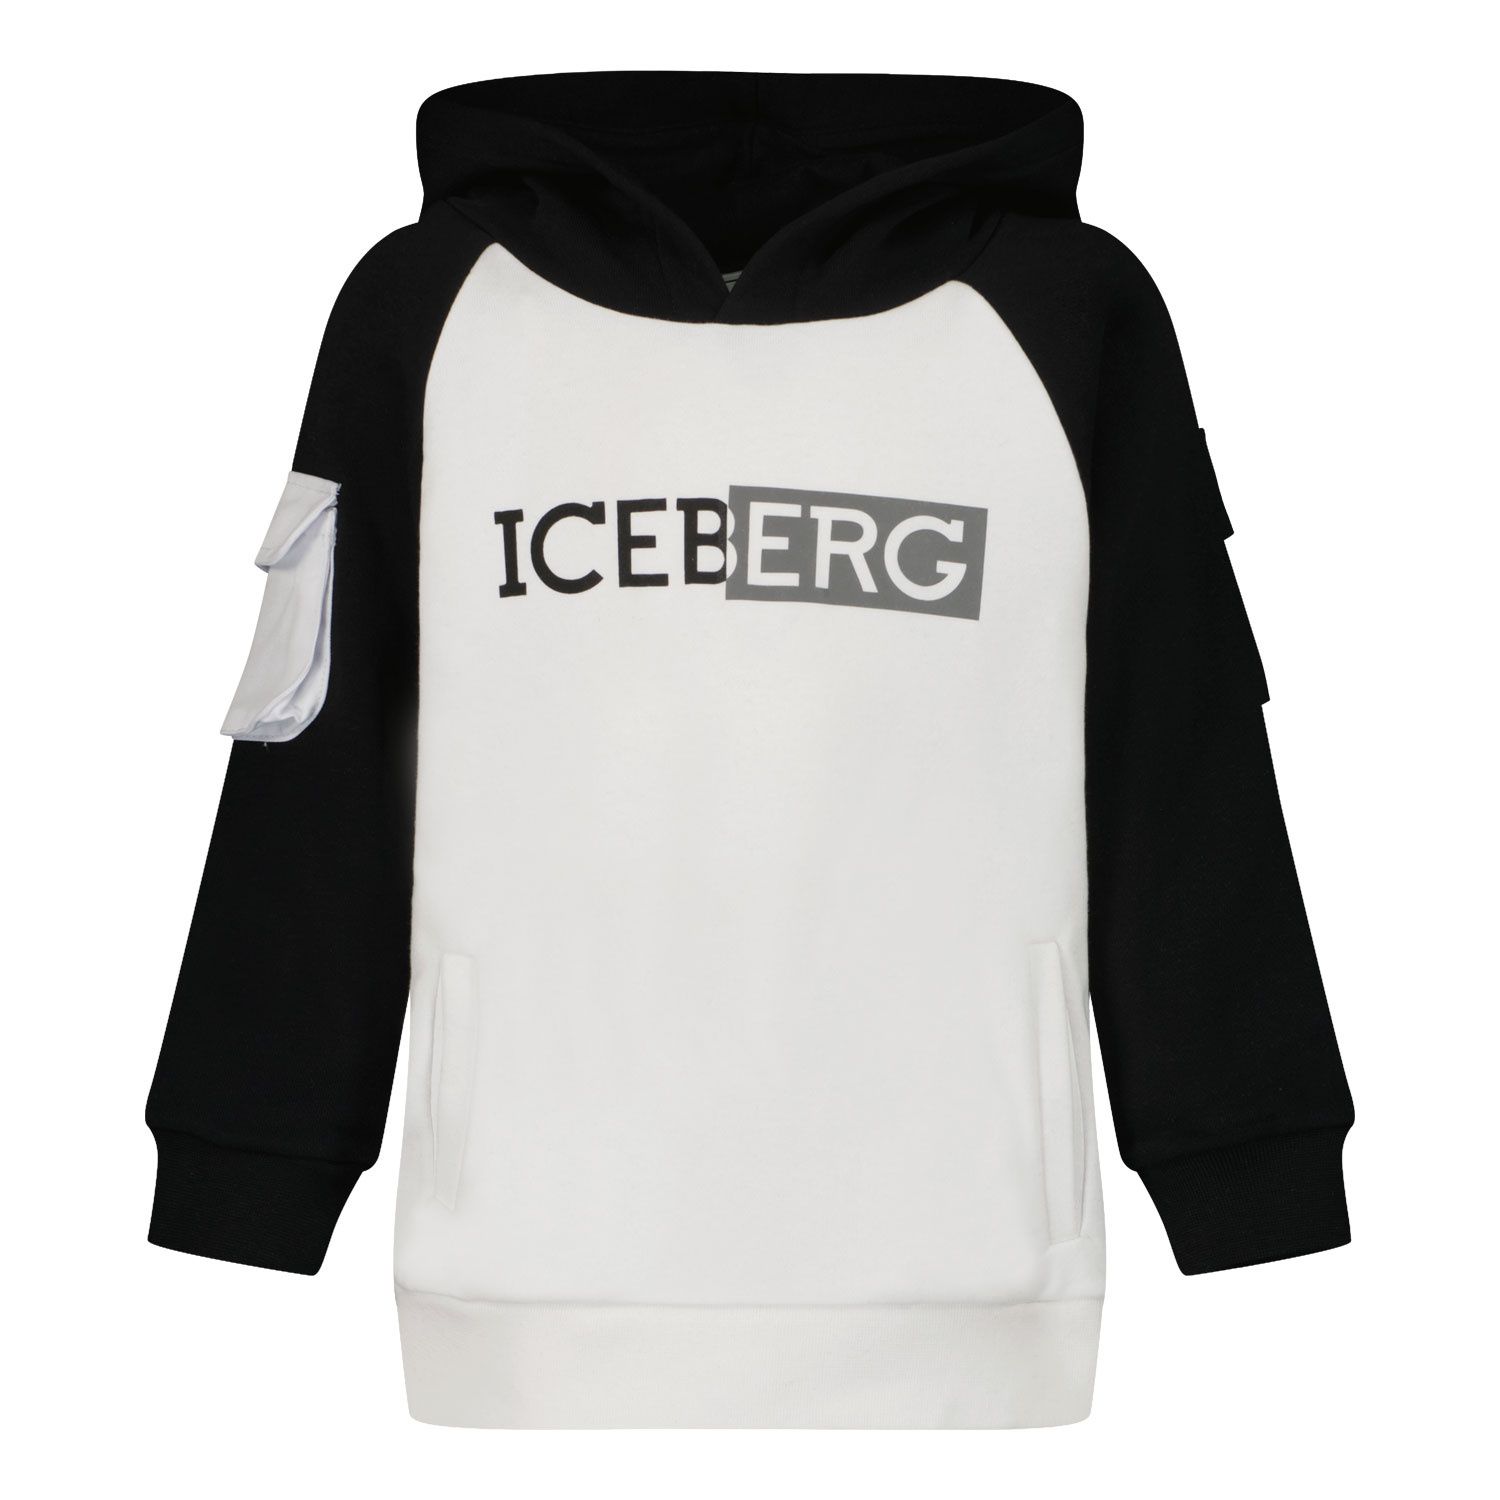 Bild von Iceberg MFICE0133B Kinderpullover Weiß